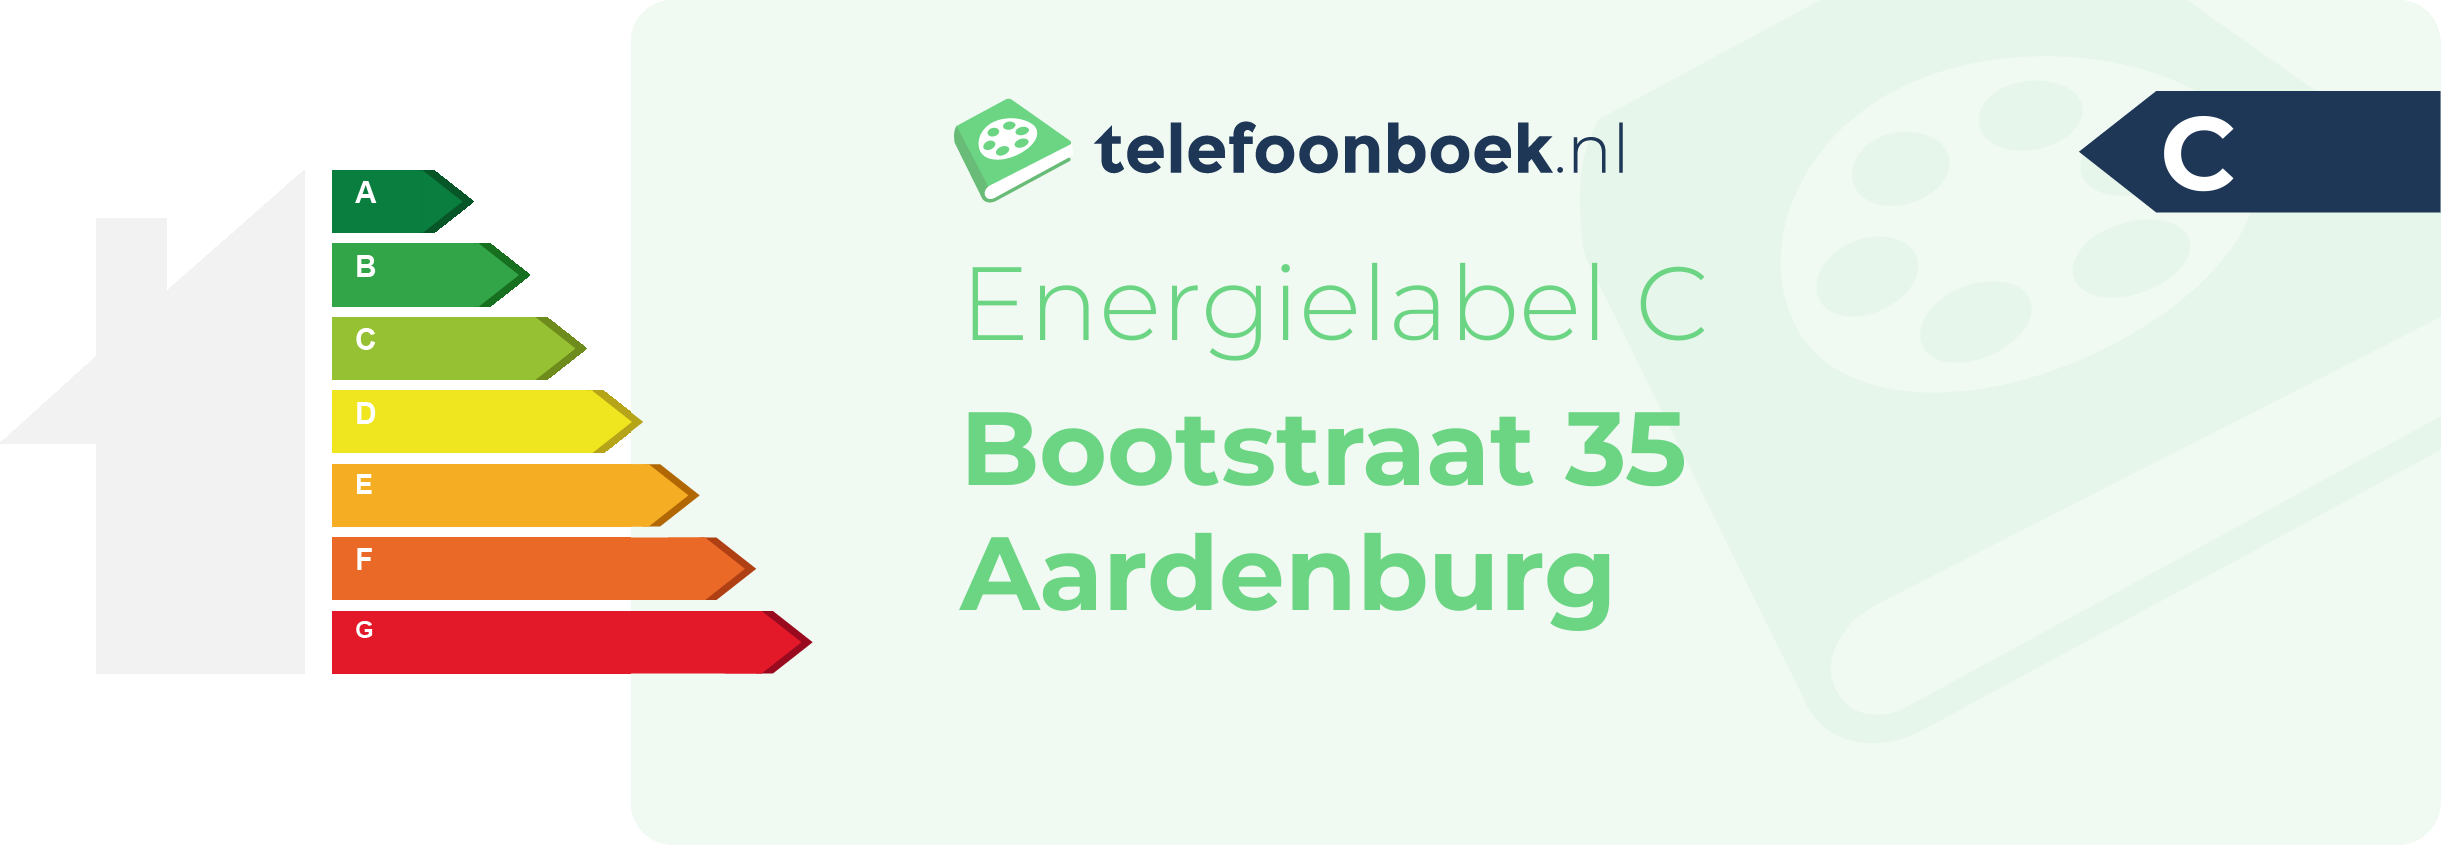 Energielabel Bootstraat 35 Aardenburg